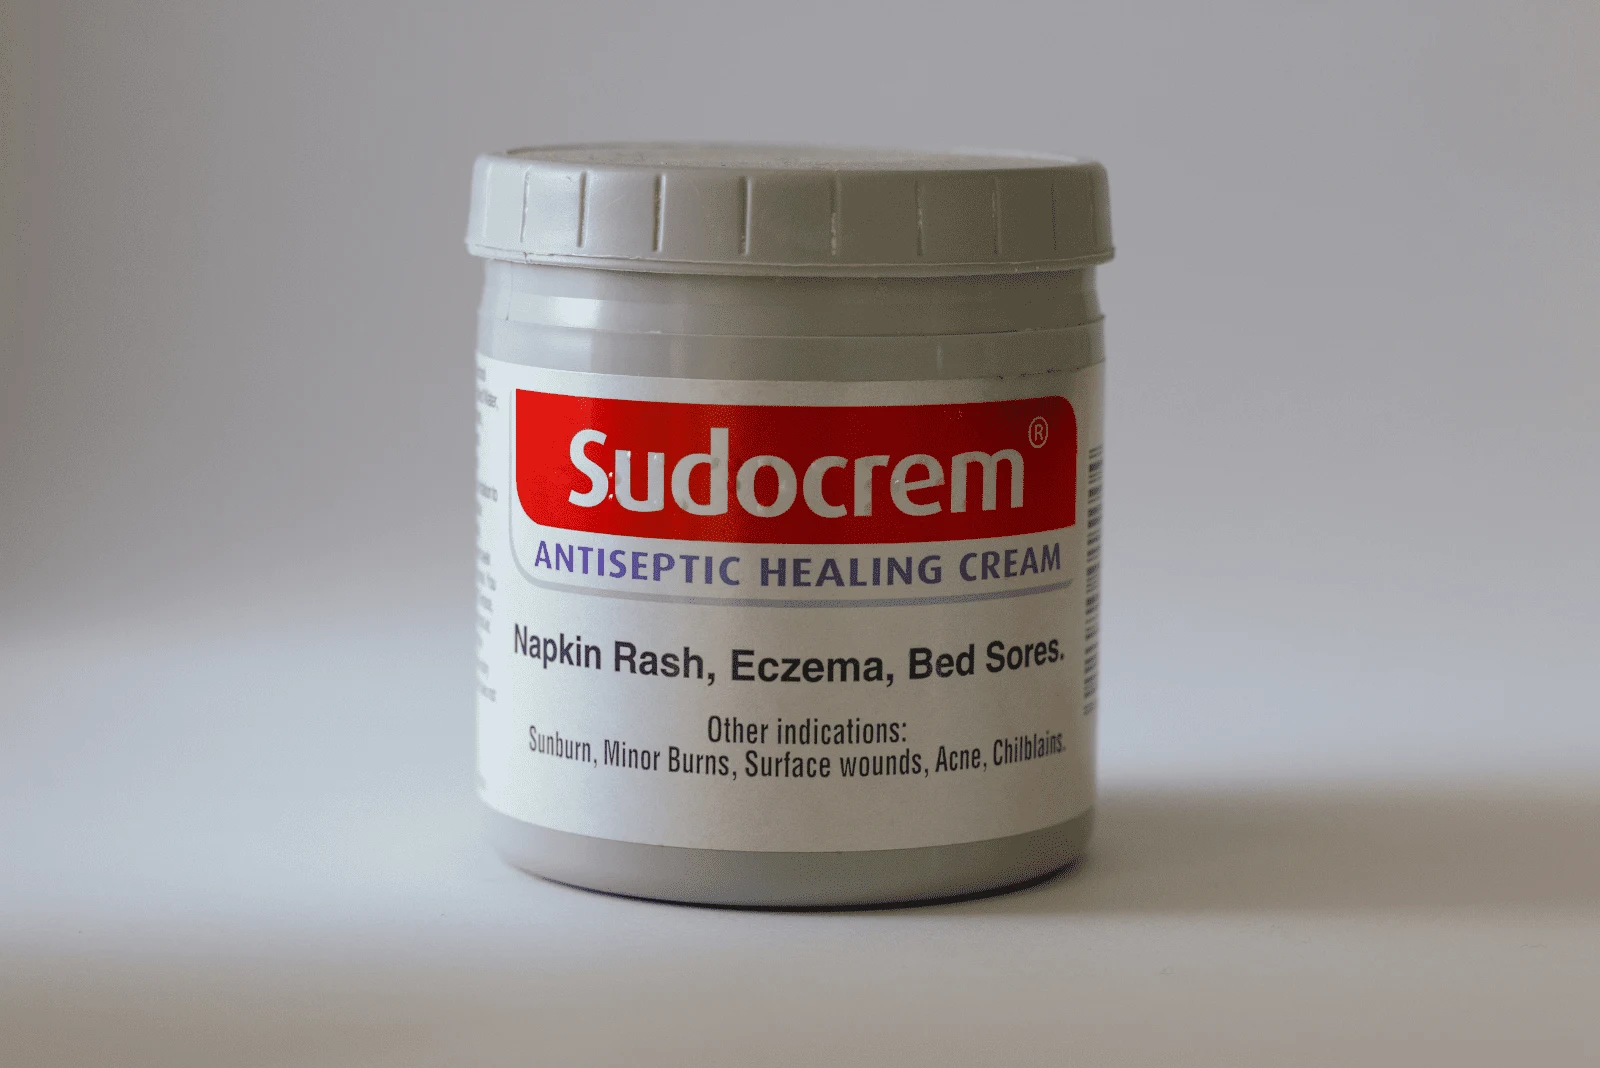 Sudocrem cream in a white box